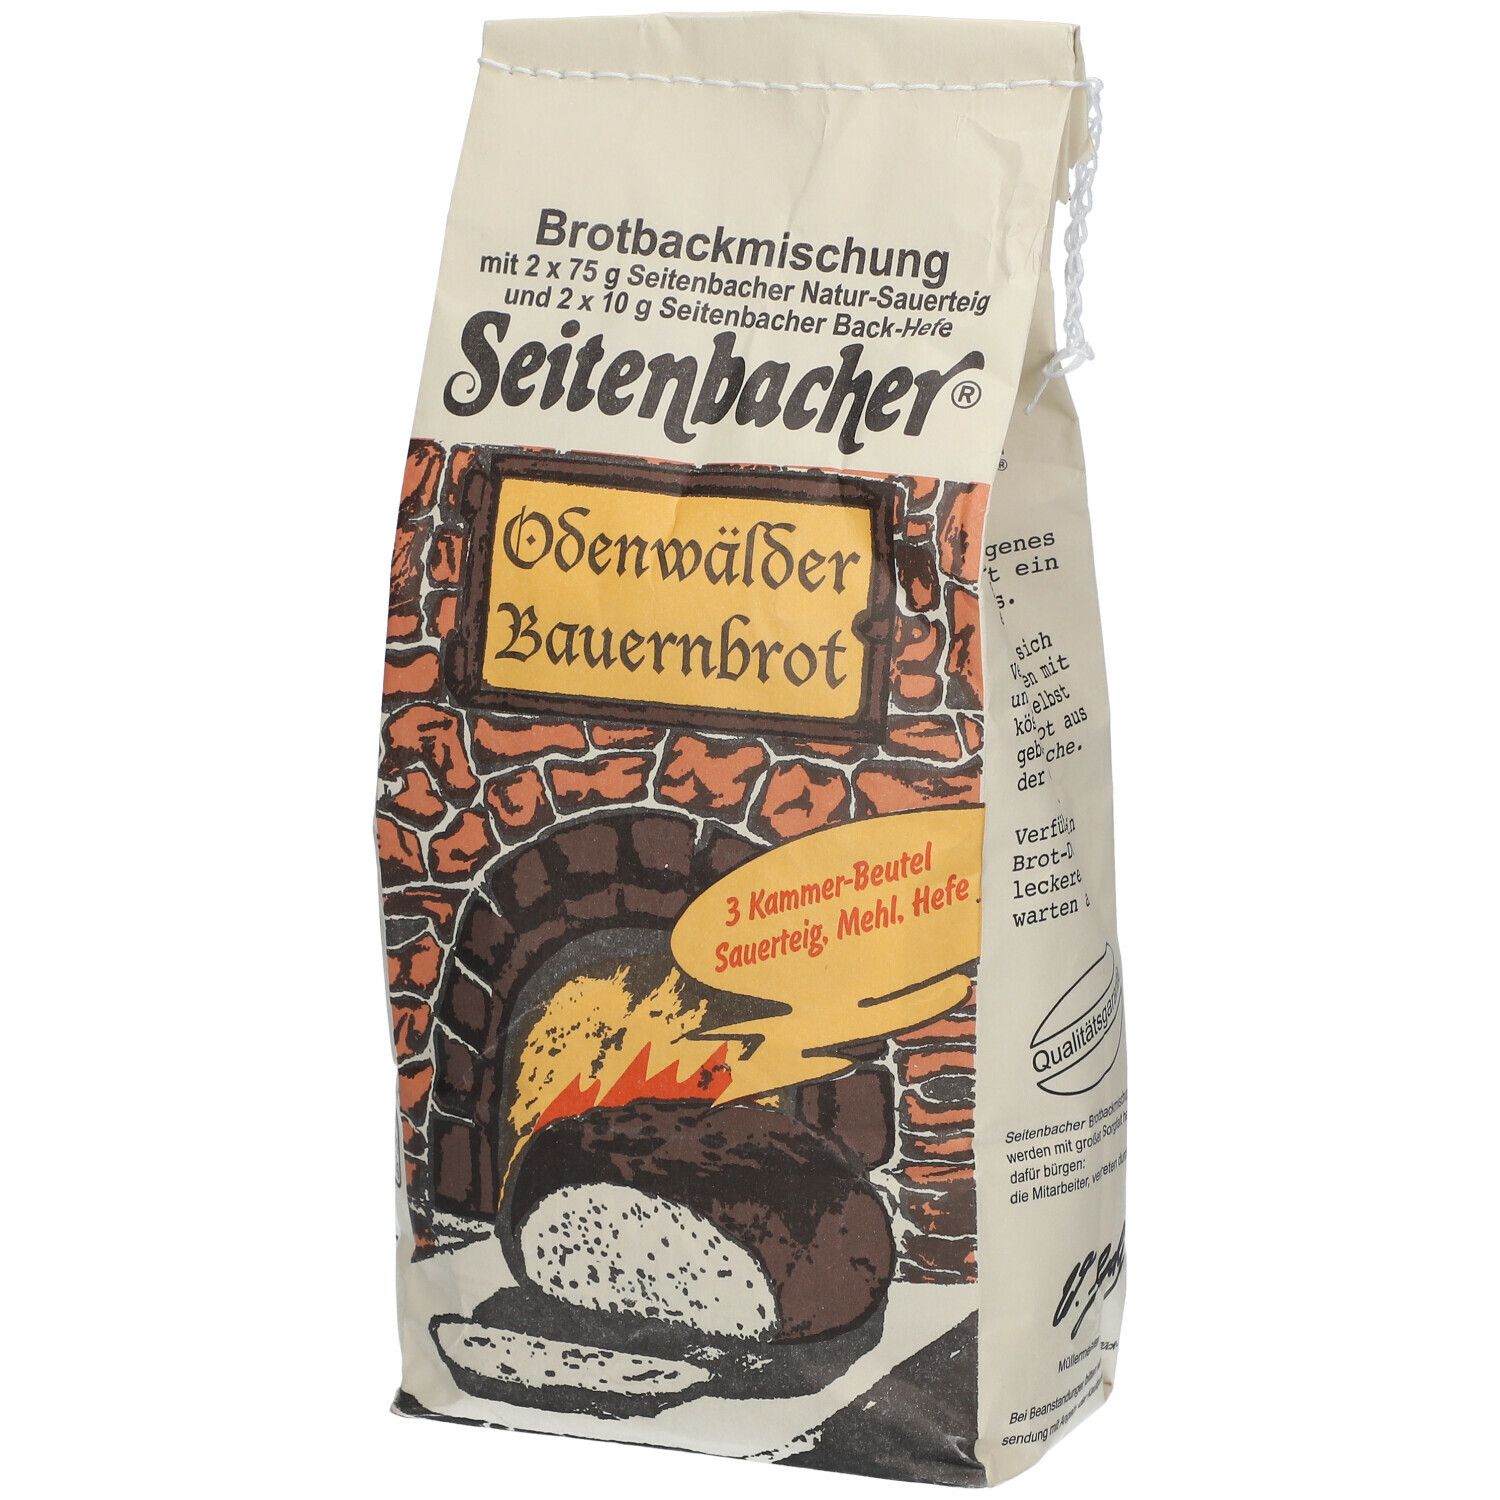 Image of Seitenbacher® Odenwälder Bauernbrot